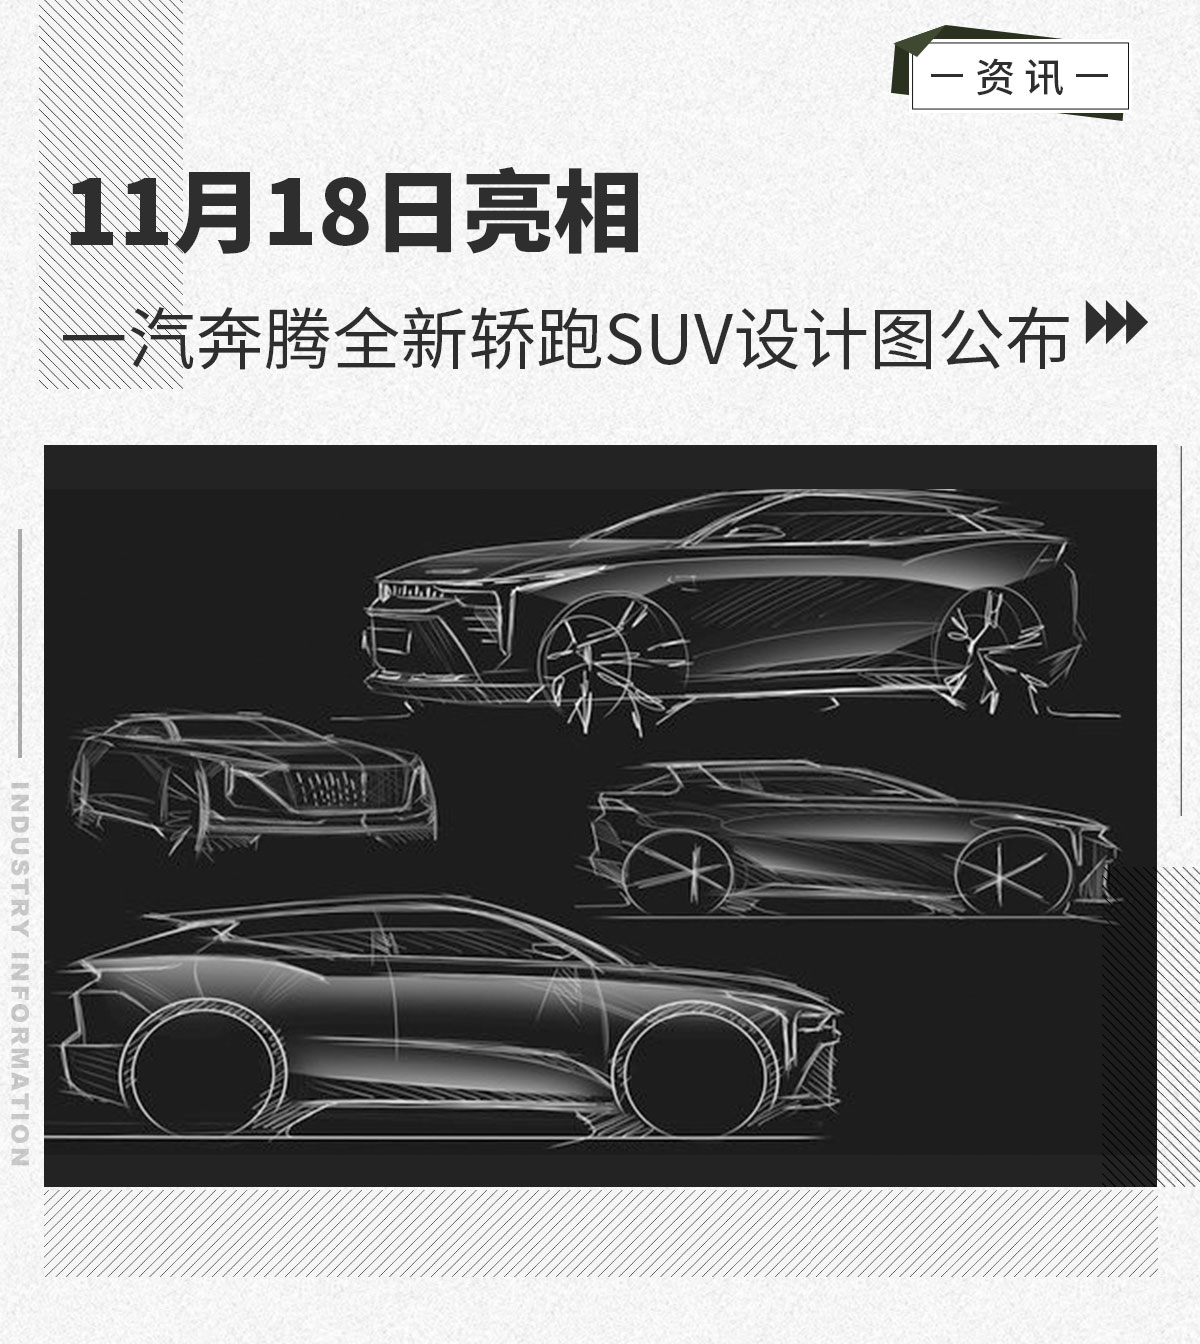 一汽奔腾全新轿跑SUV设计图公布 11月18日亮相